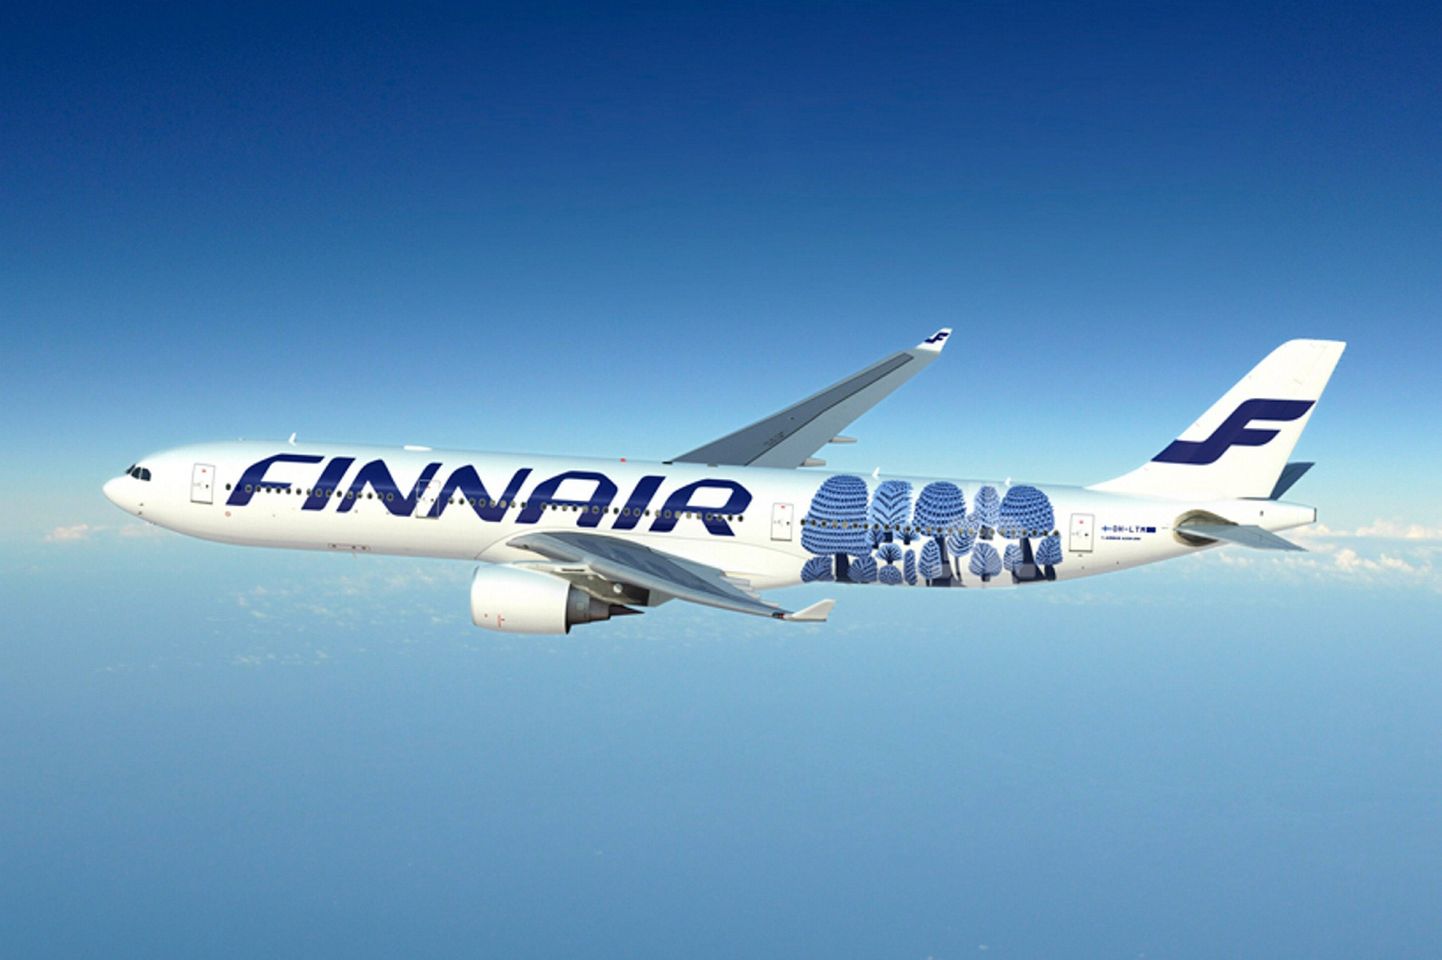 Finnair.